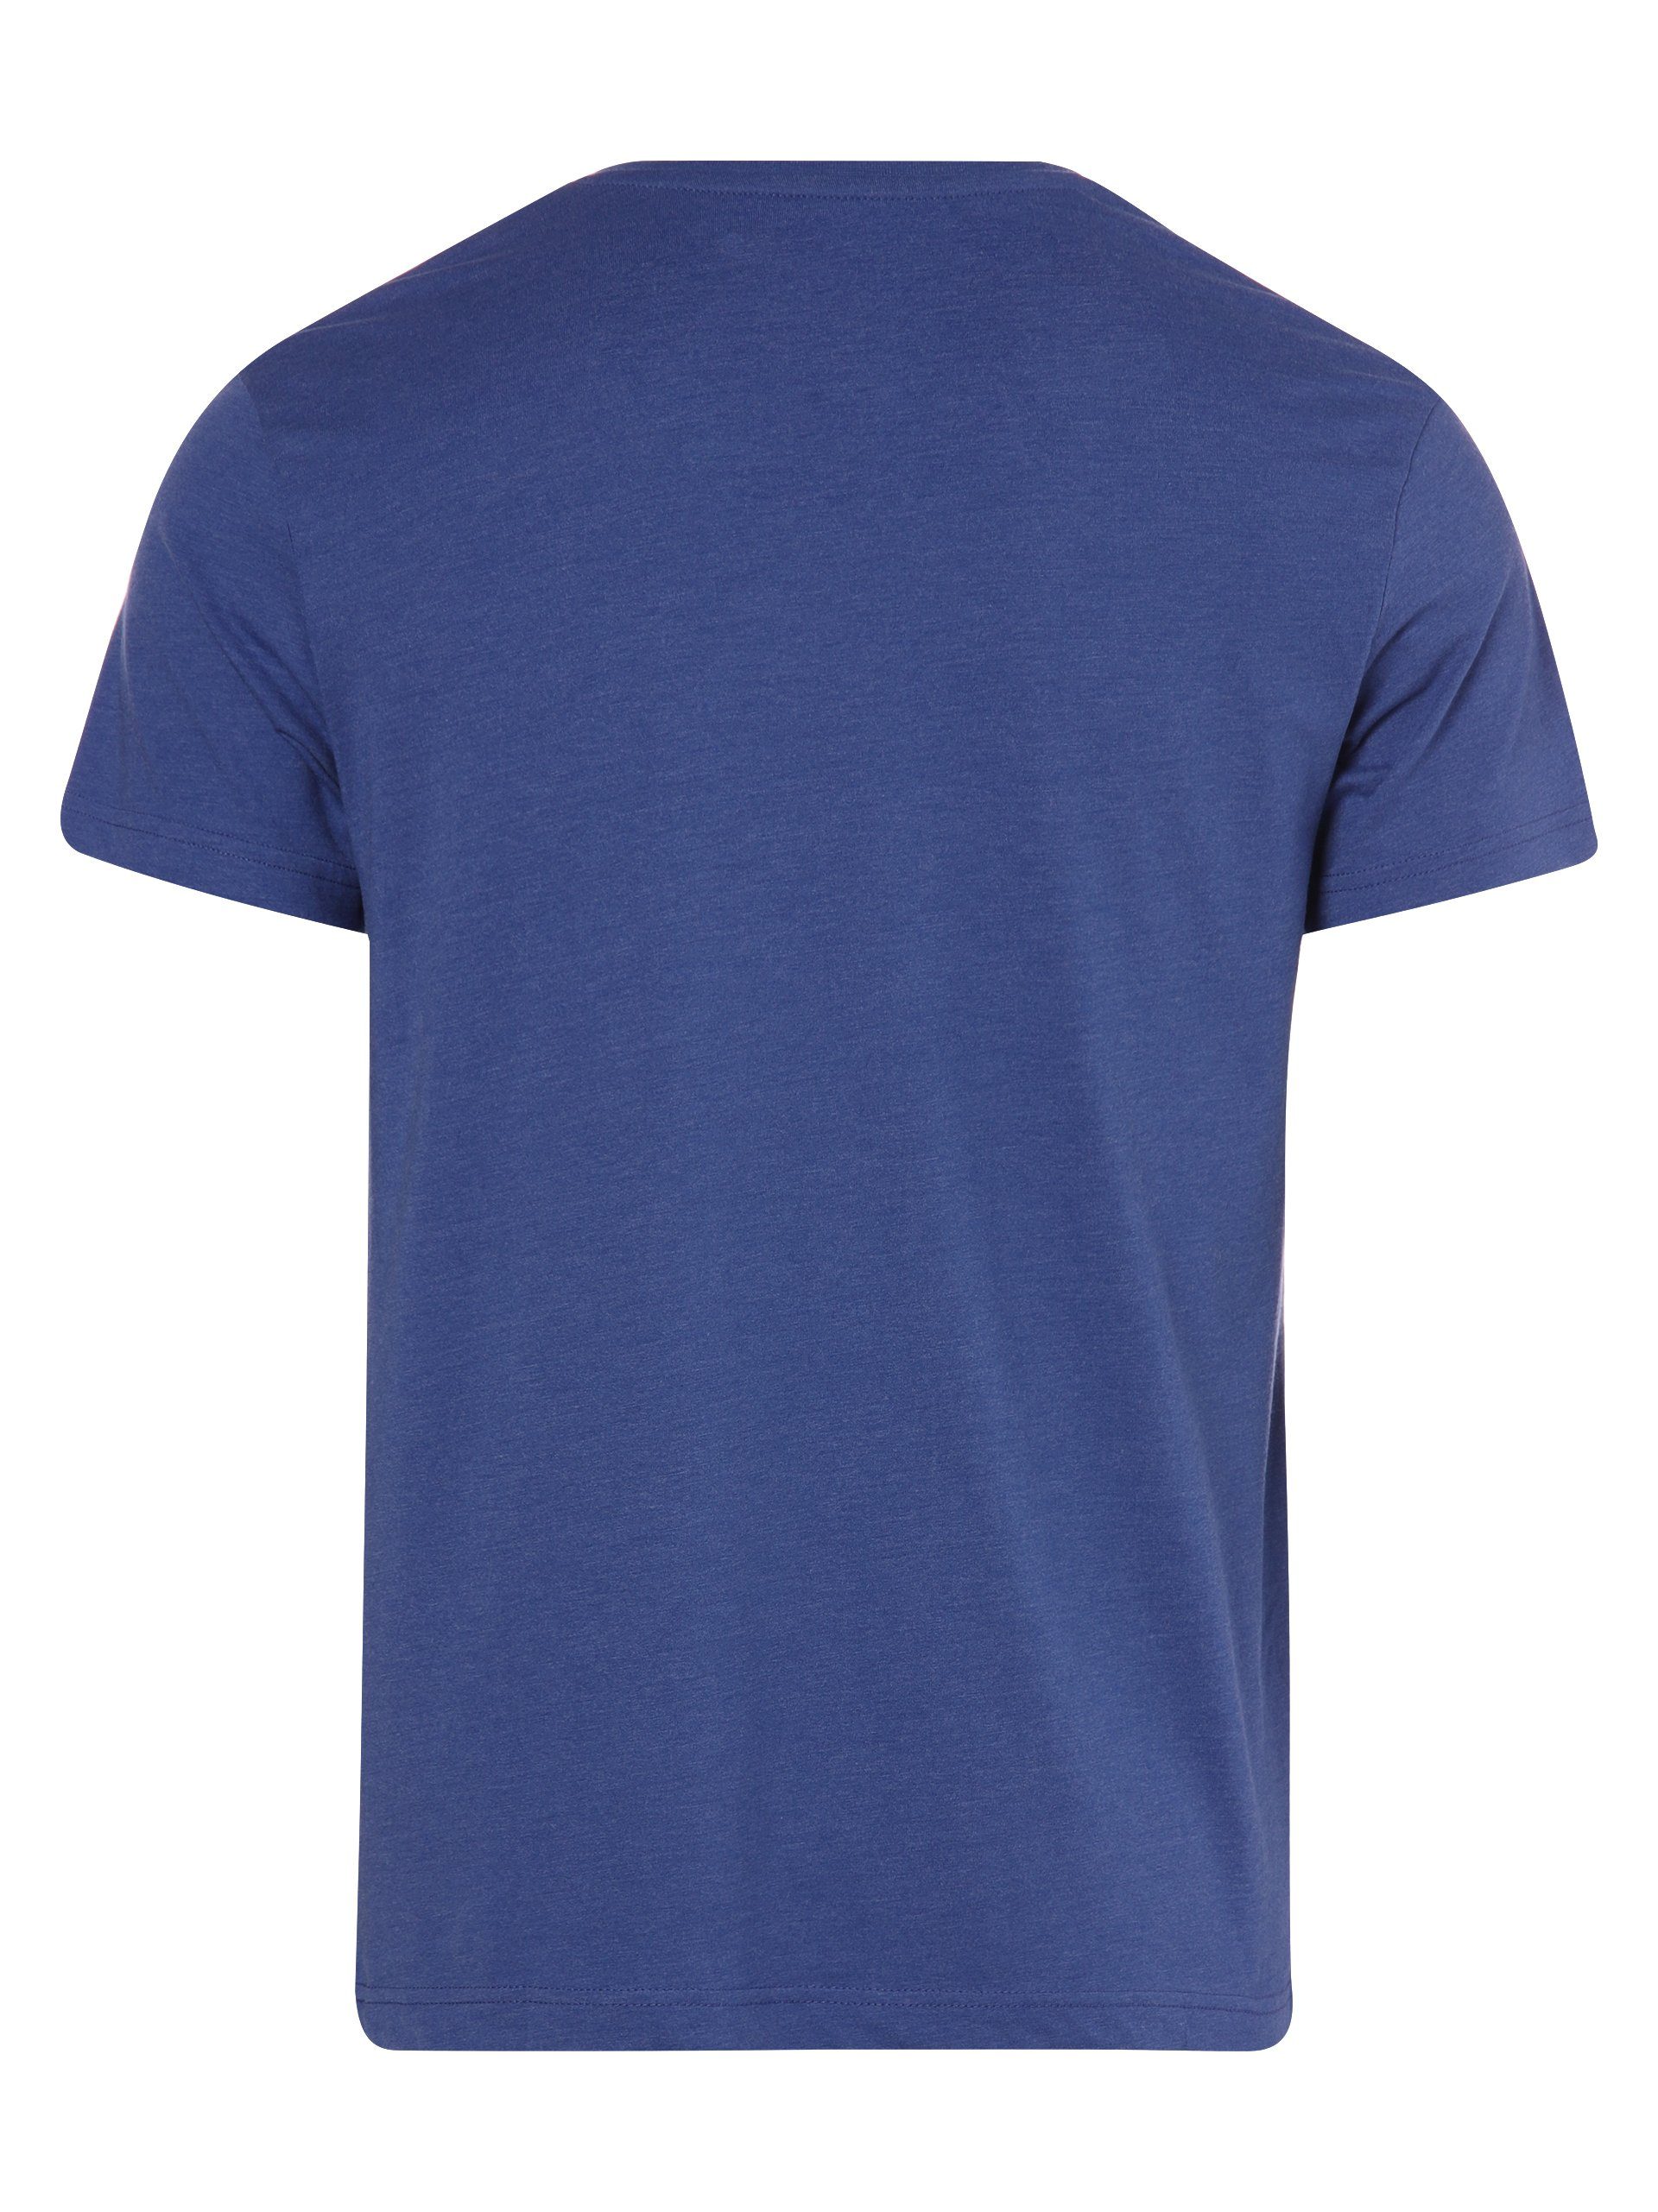 Sundström blau T-Shirt Nils